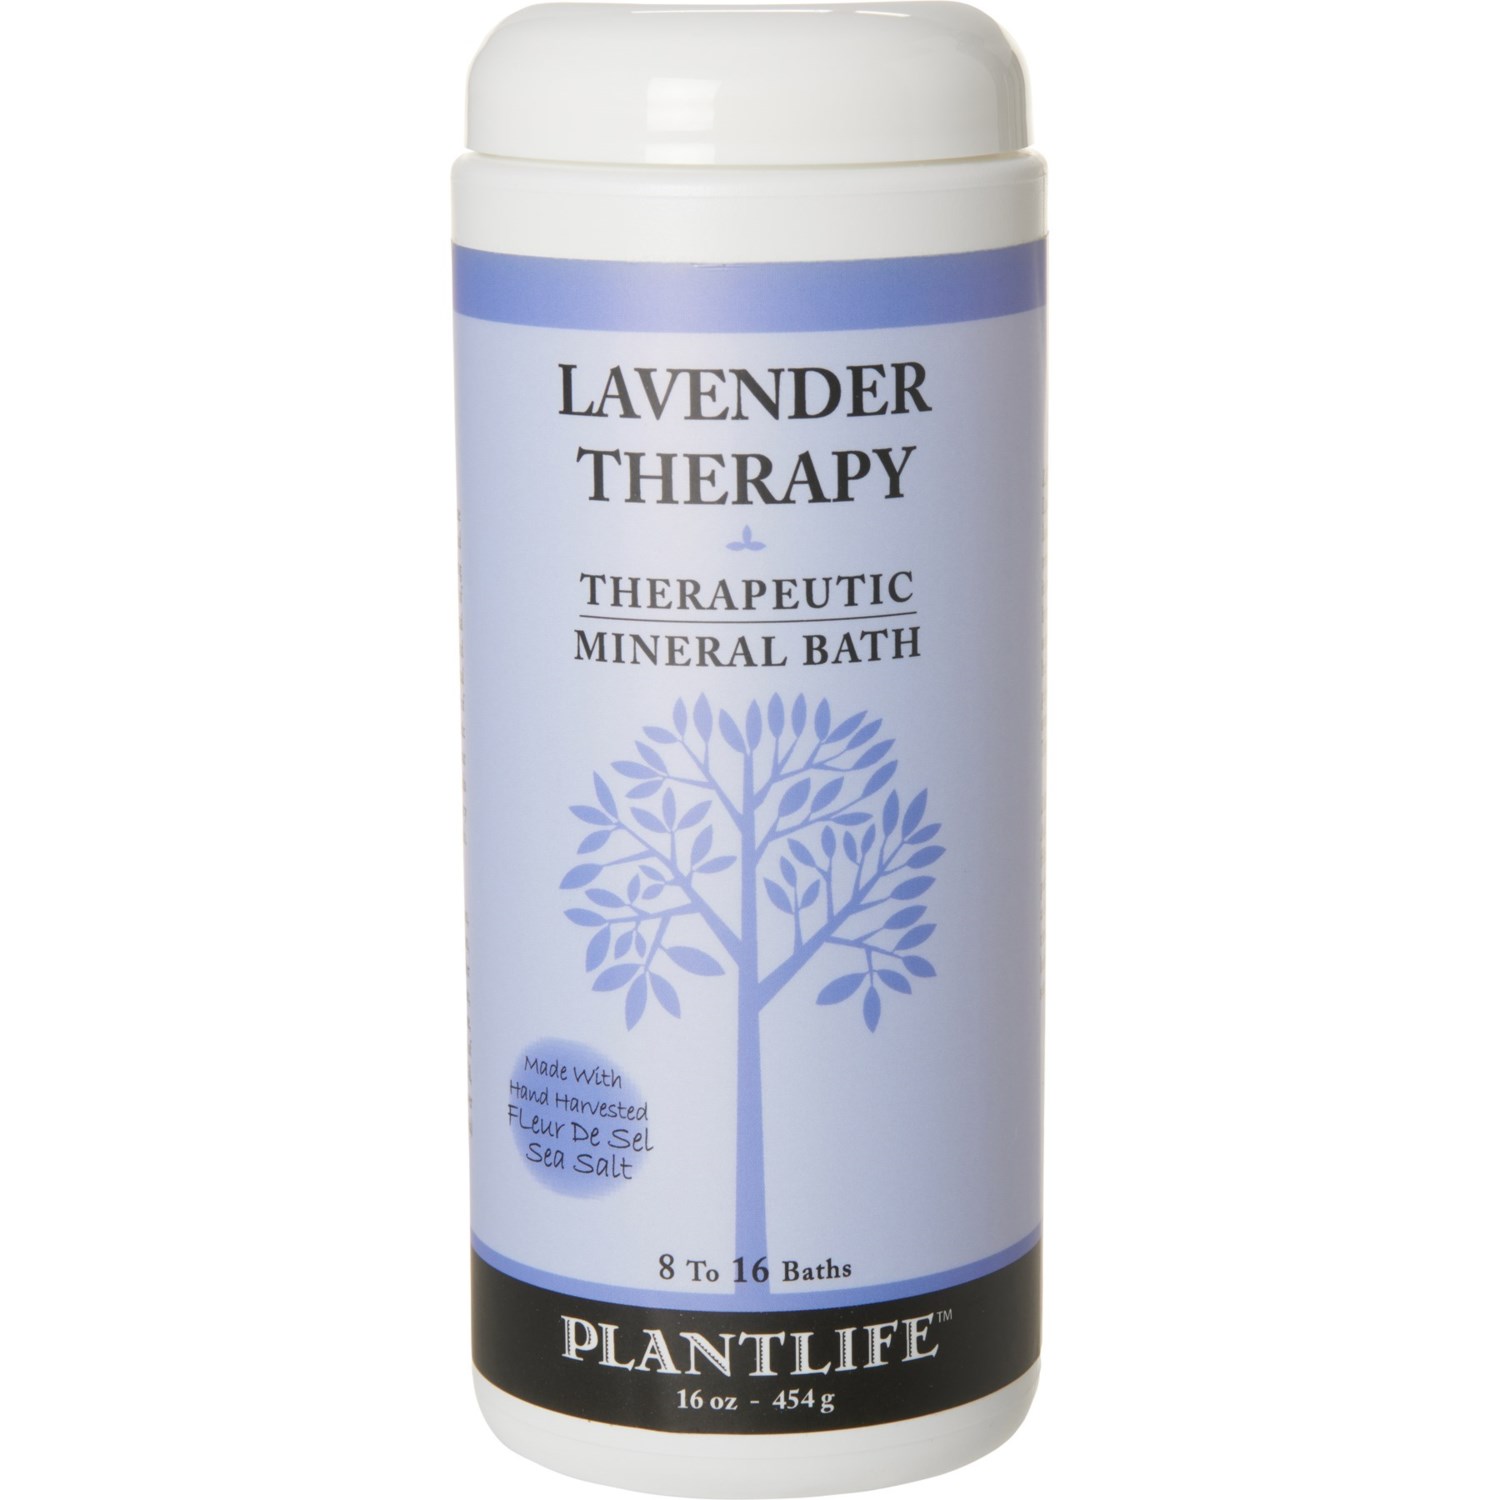 Plant Life Lavender Therapy Bath Salts - 16 oz.